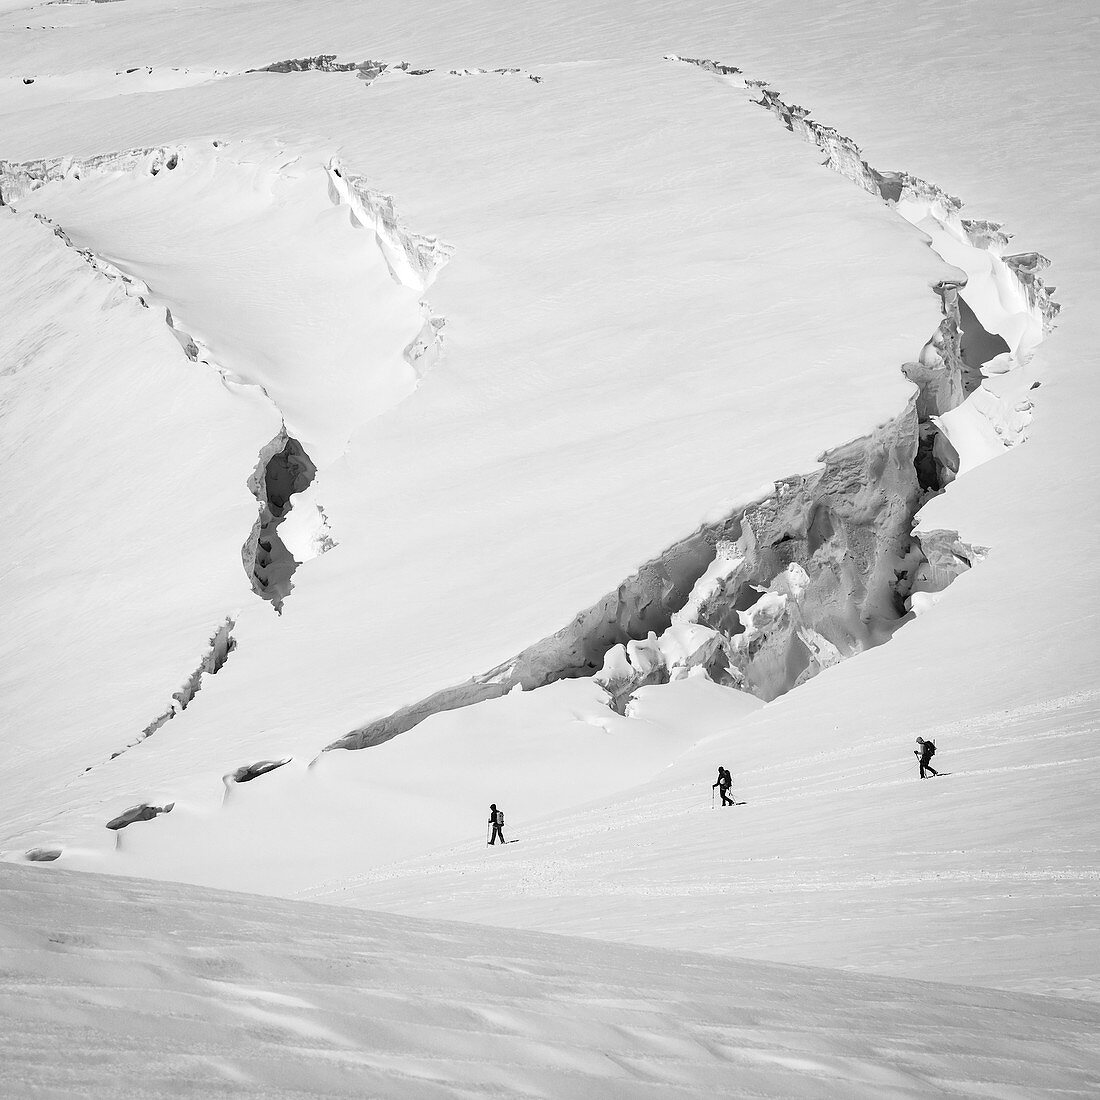 Bergsteiger Überqueren einen Gletscher am Fuss der Offenen Gletscherspalten, Monte Rosa, Gressoney-La-Trinite, Aostatal, Italien